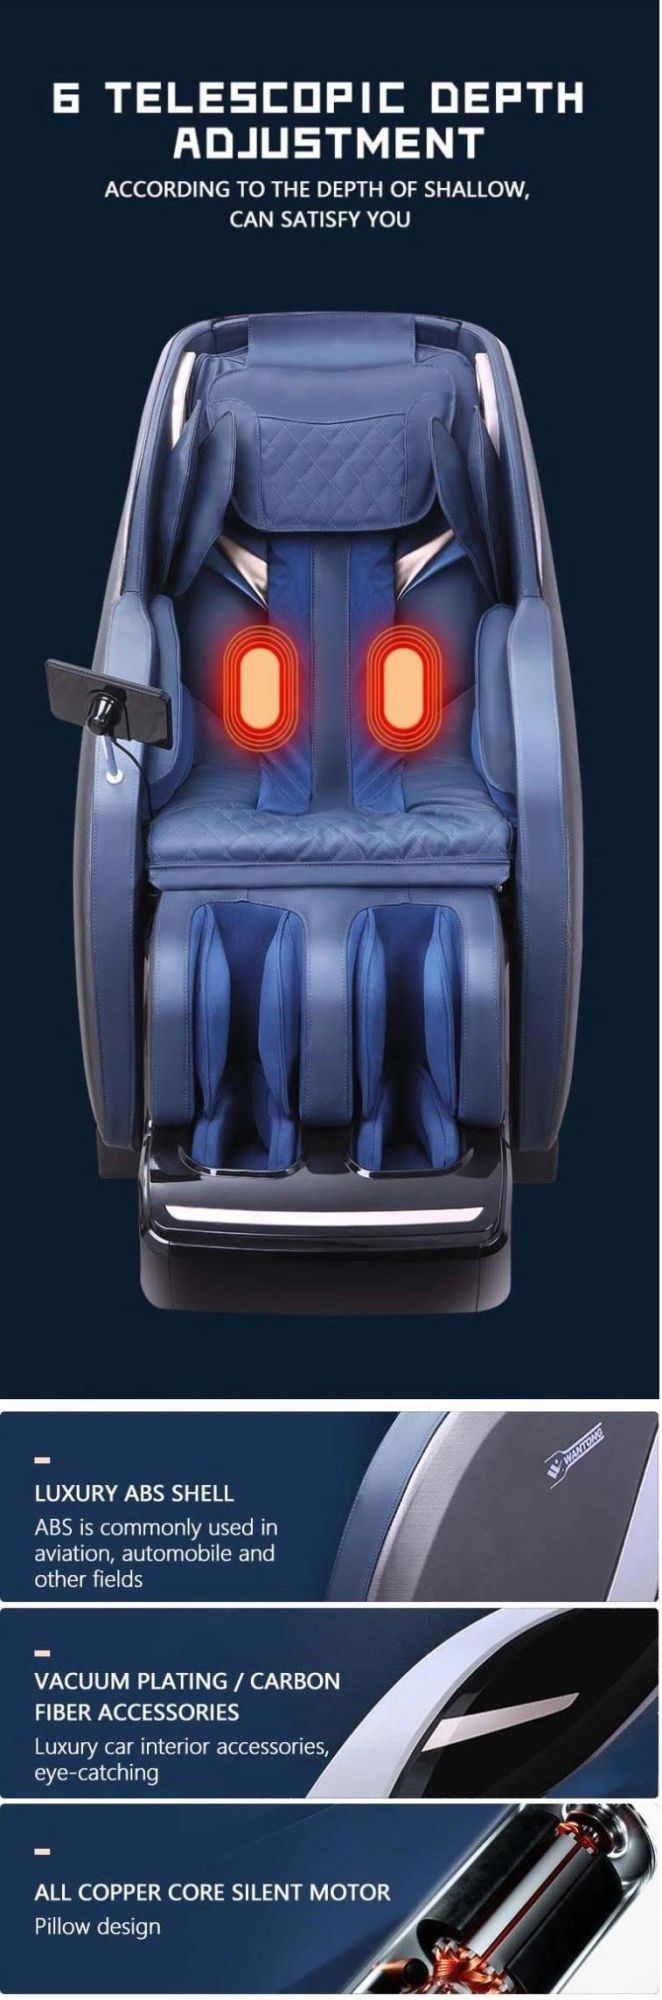 Hot Sell 4D Warm Massaging Roller Massage Chair Zero Gravity Electric Massage Chair